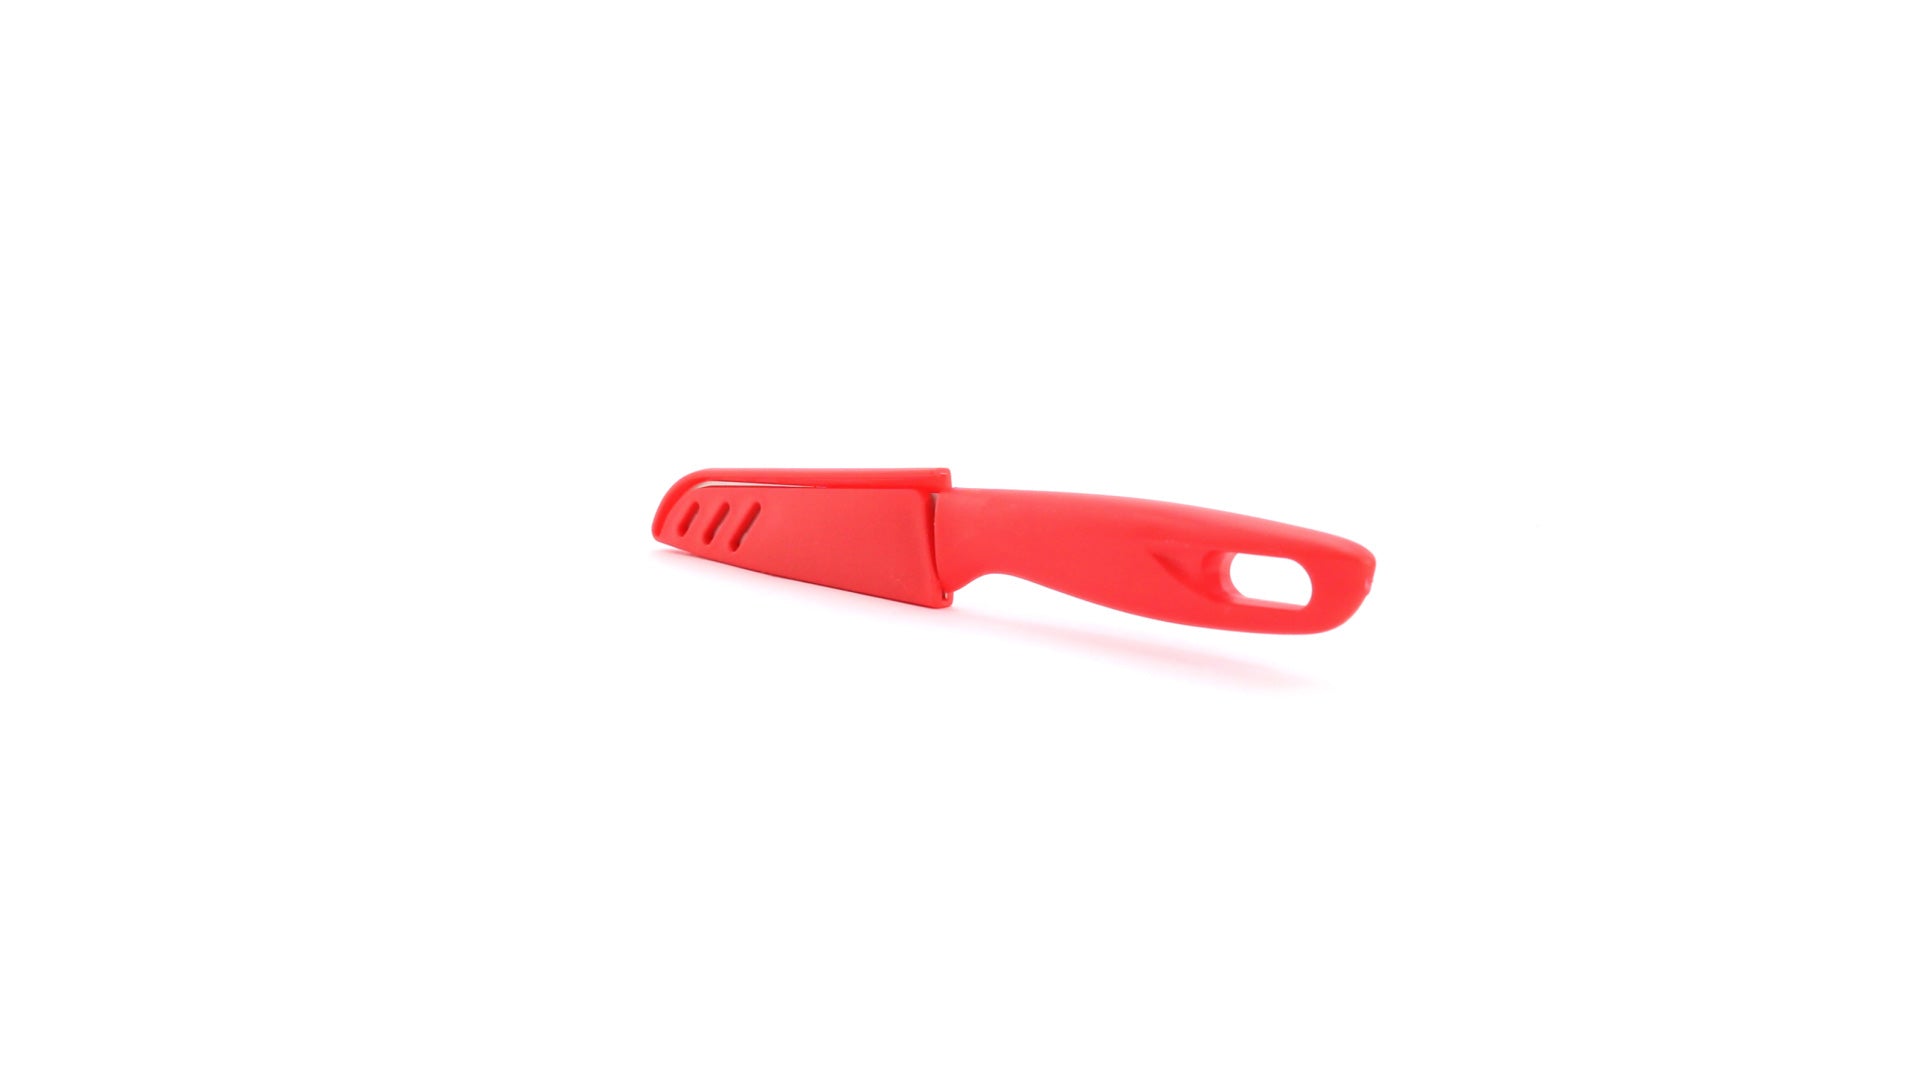 Couteau avec lame en acier inoxydable KAI pratique pour la découpe de légumes ou viandes